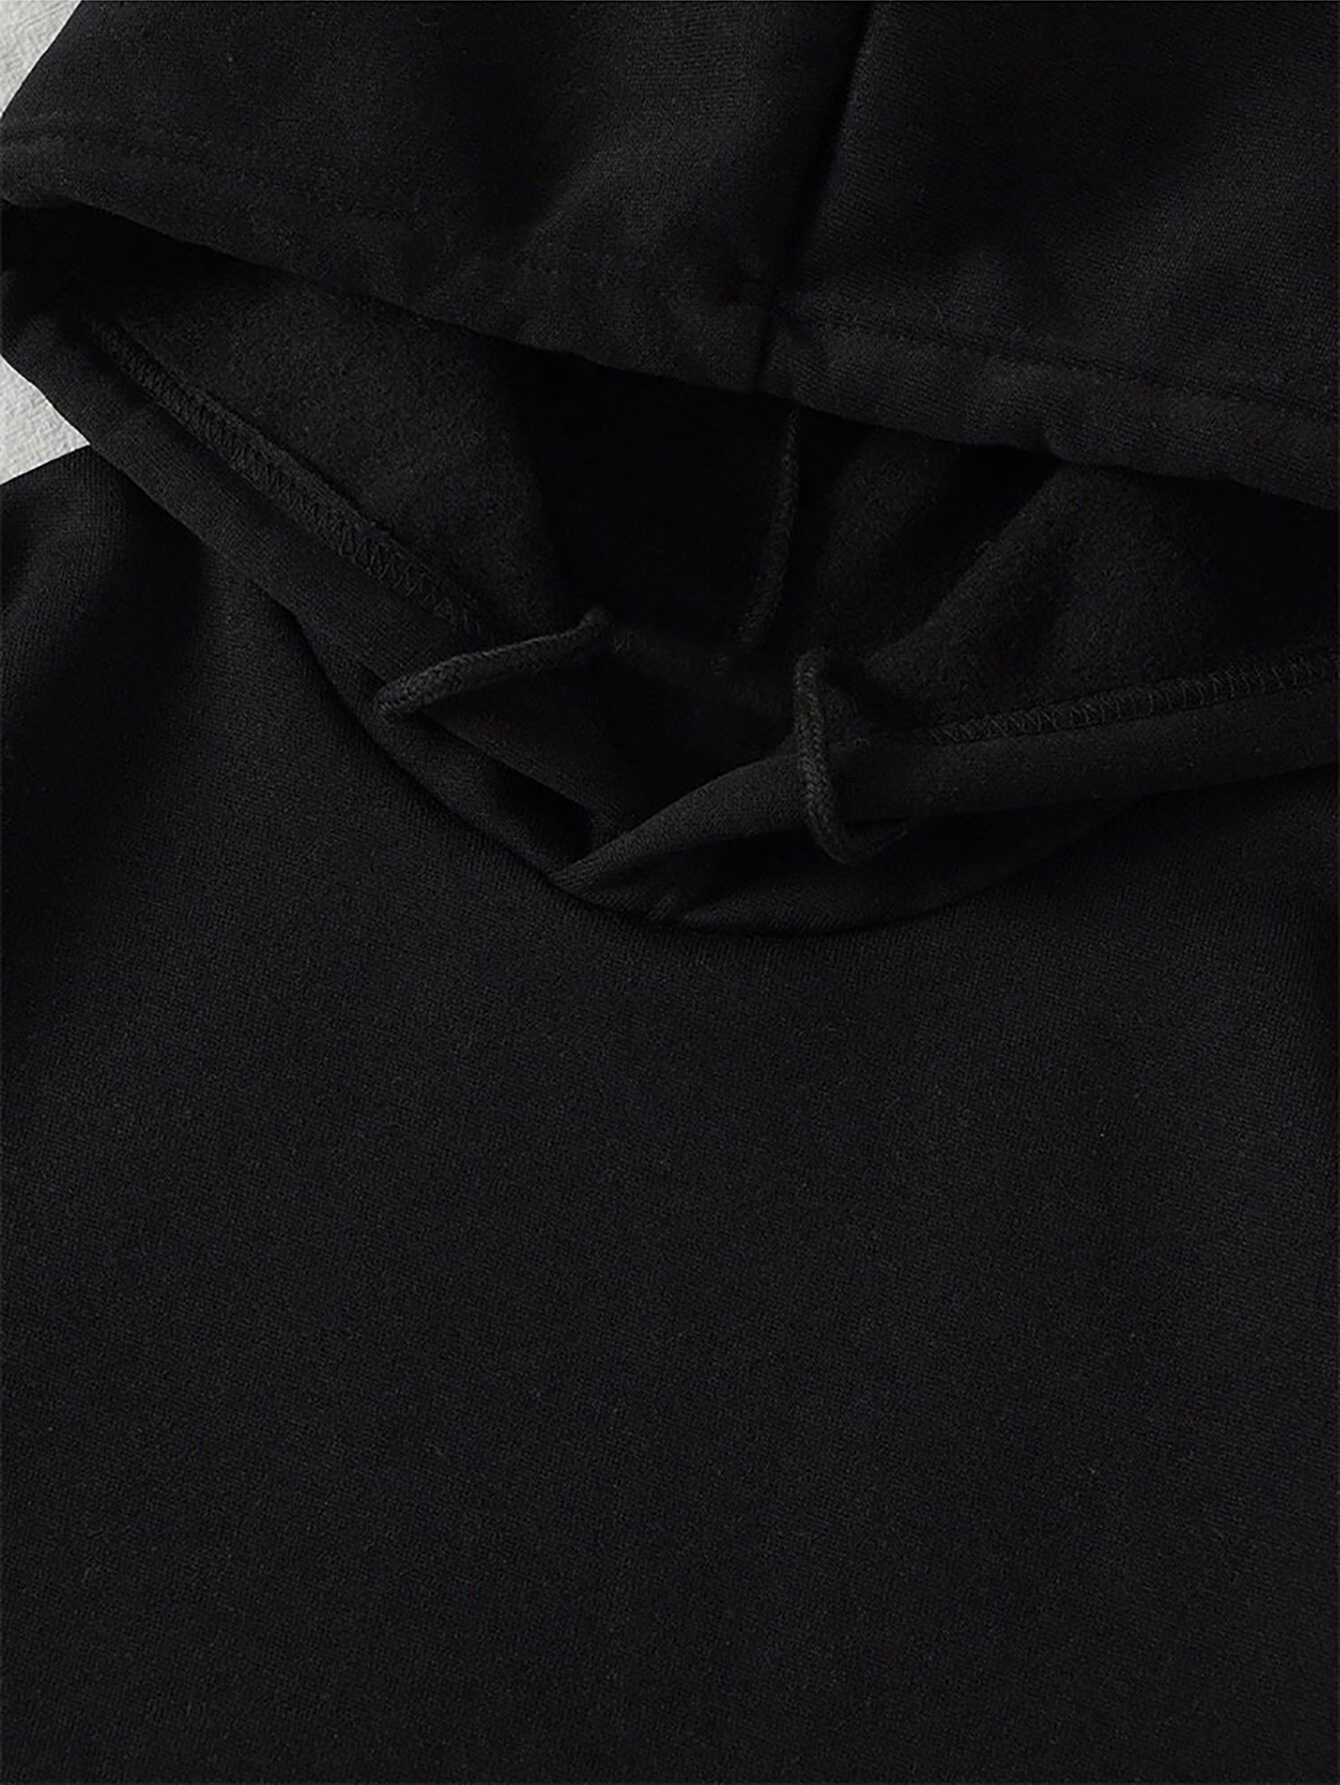 Women's Hoodie Long Sleeve Hoodies & Sweatshirts Printing Pocket Casual Letter display picture 4